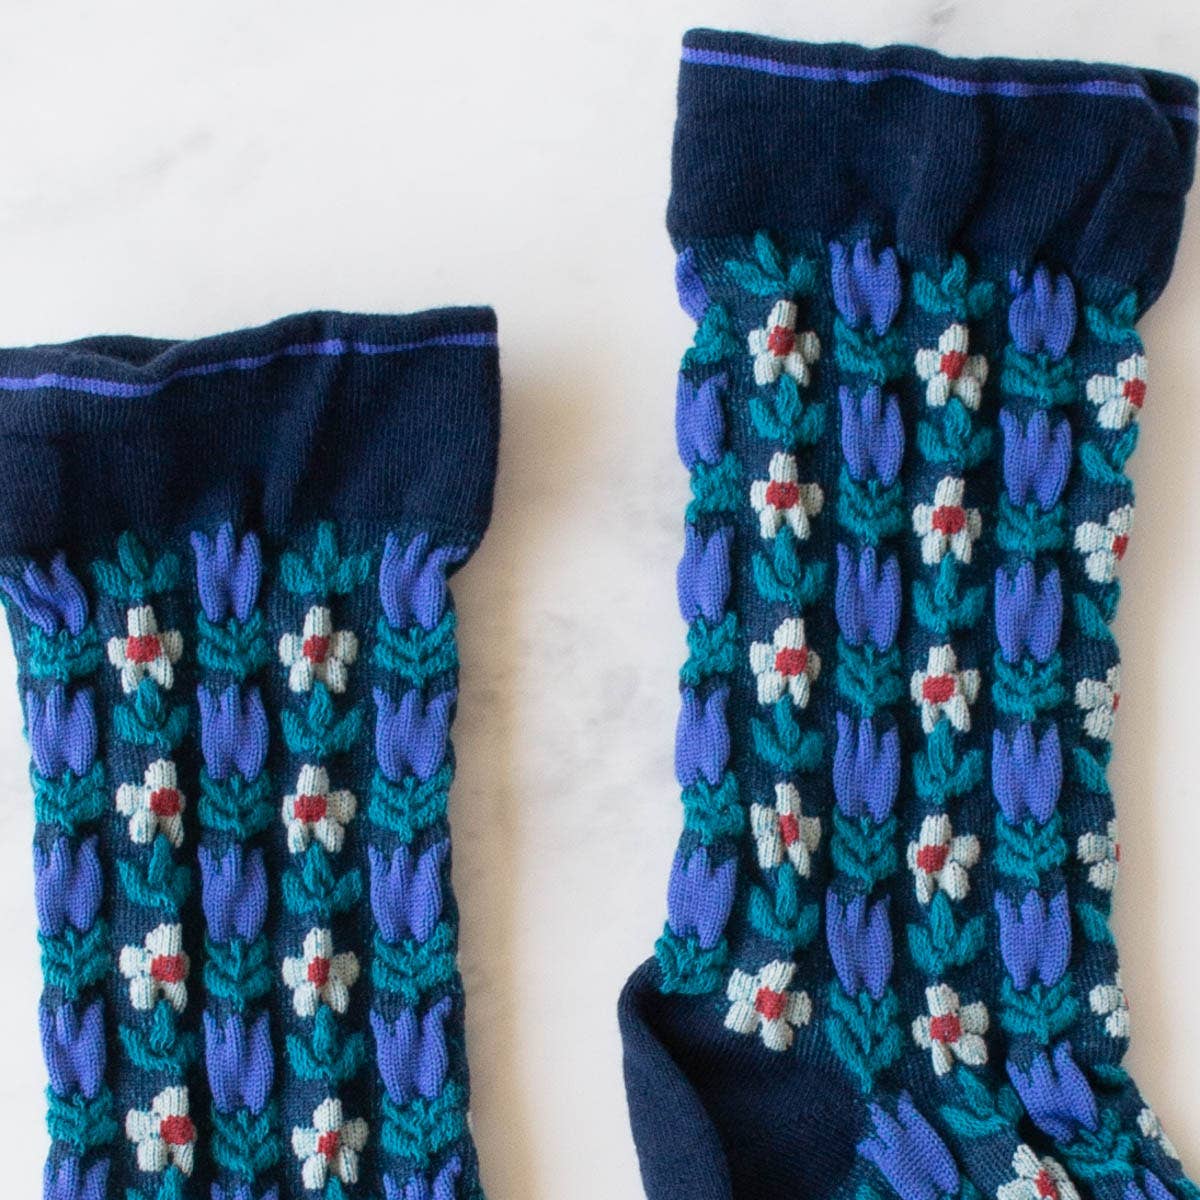 Vintage Floral Casual Socks: Bule/Navy